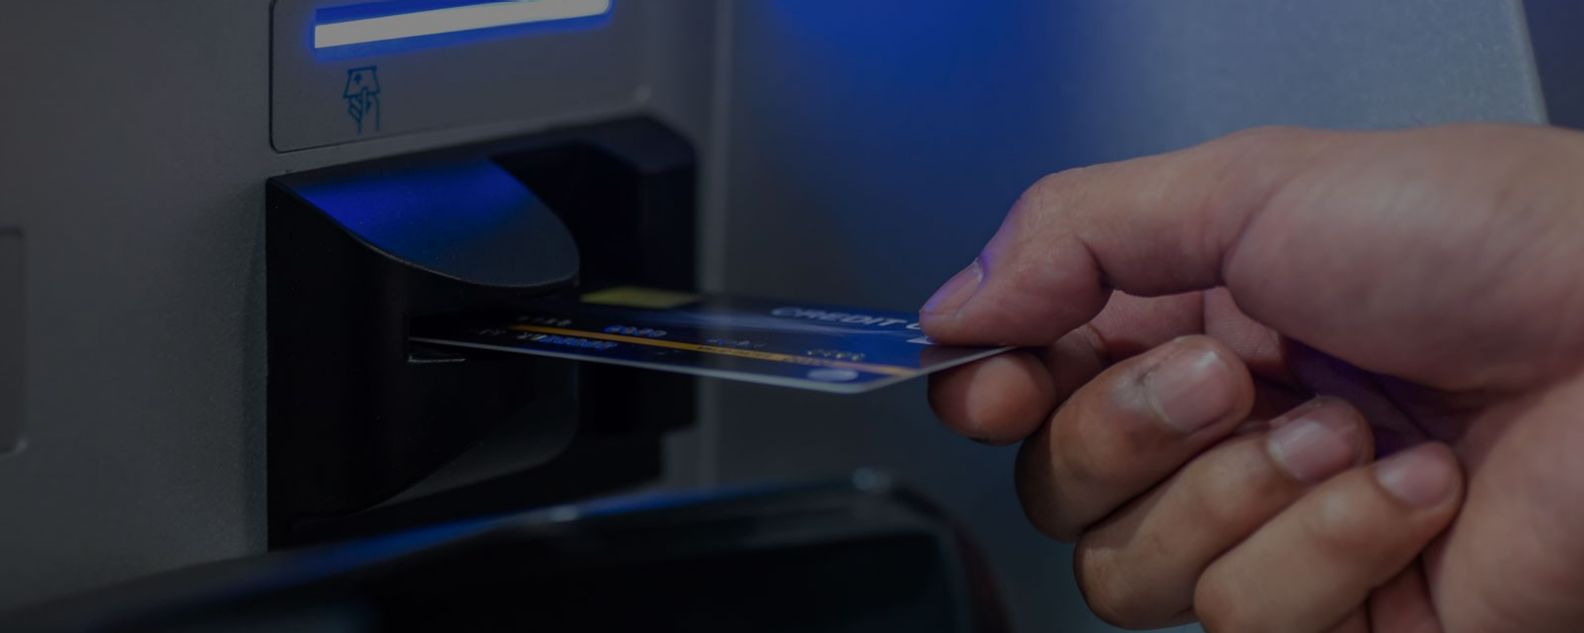 Uomo che inserisce la carta di debito in un bancomat